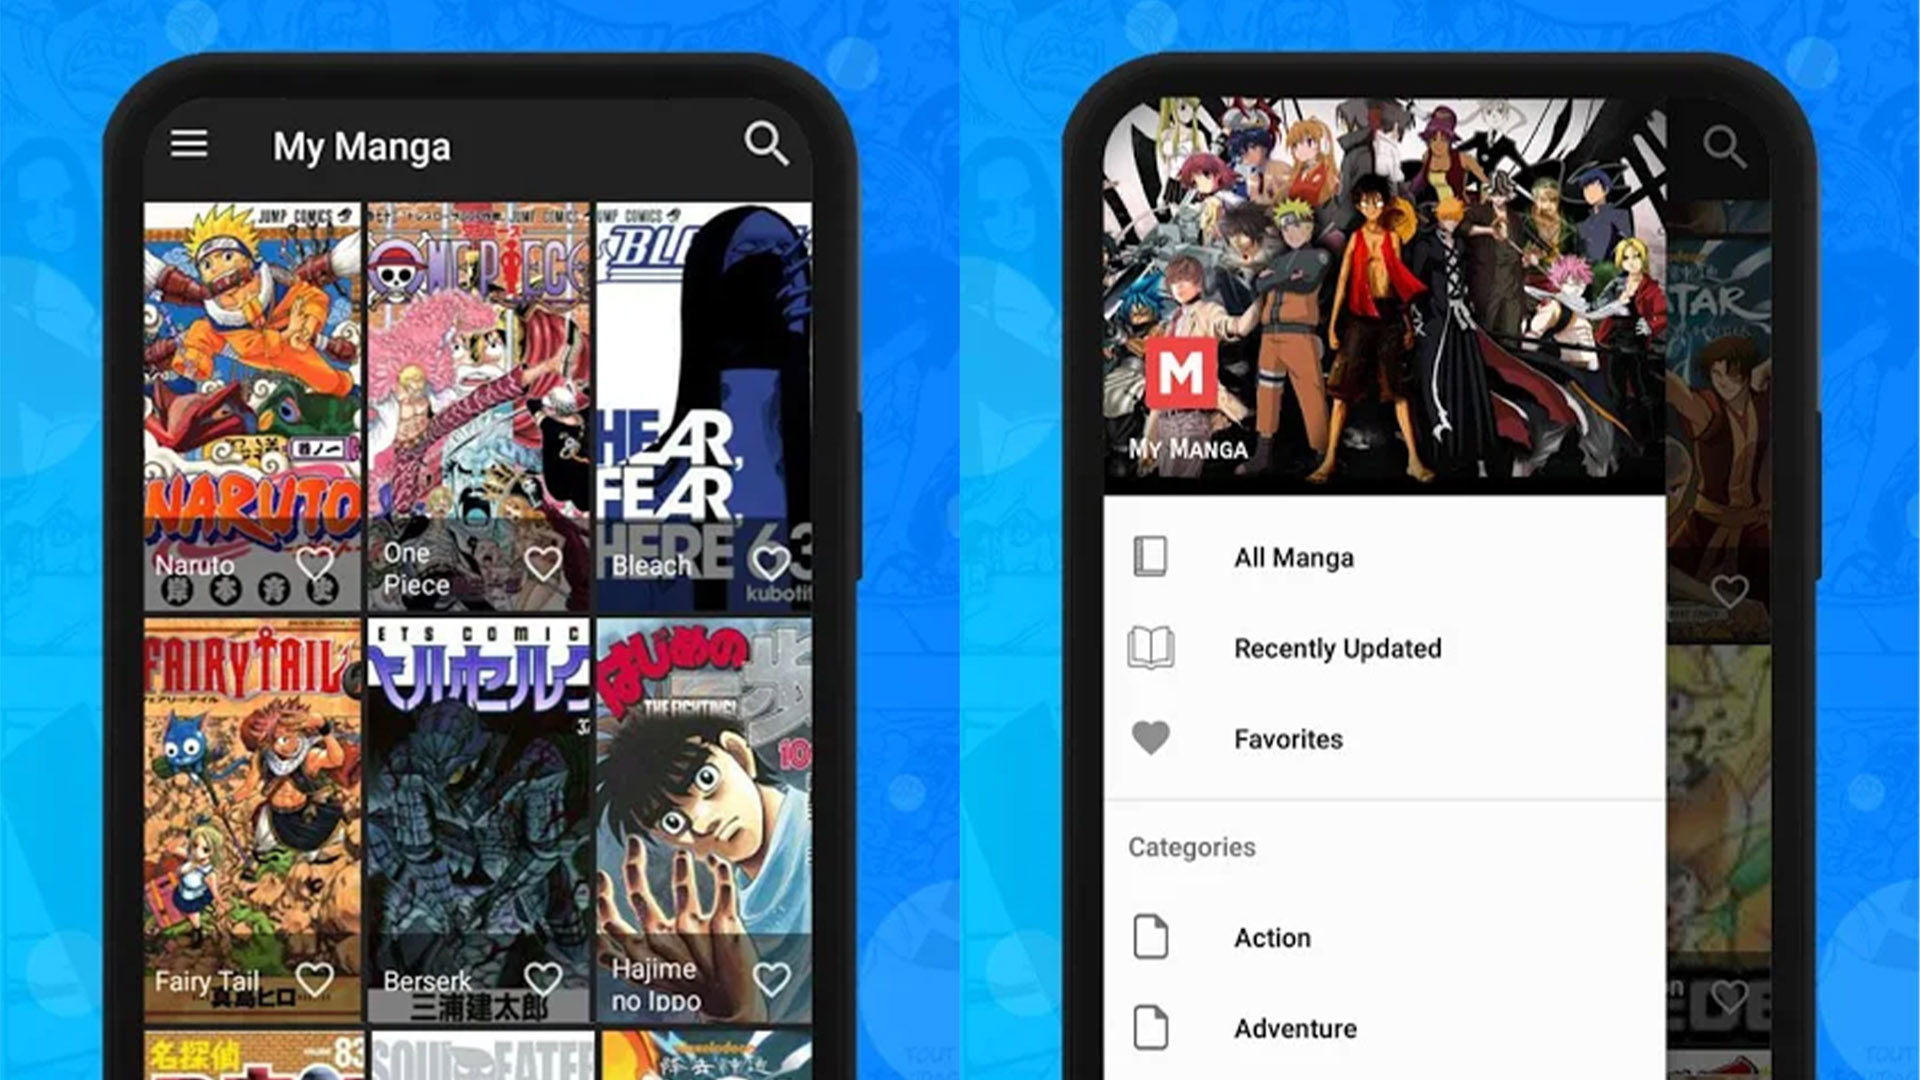 Quero Animes - Notícias APK (Android App) - Baixar Grátis